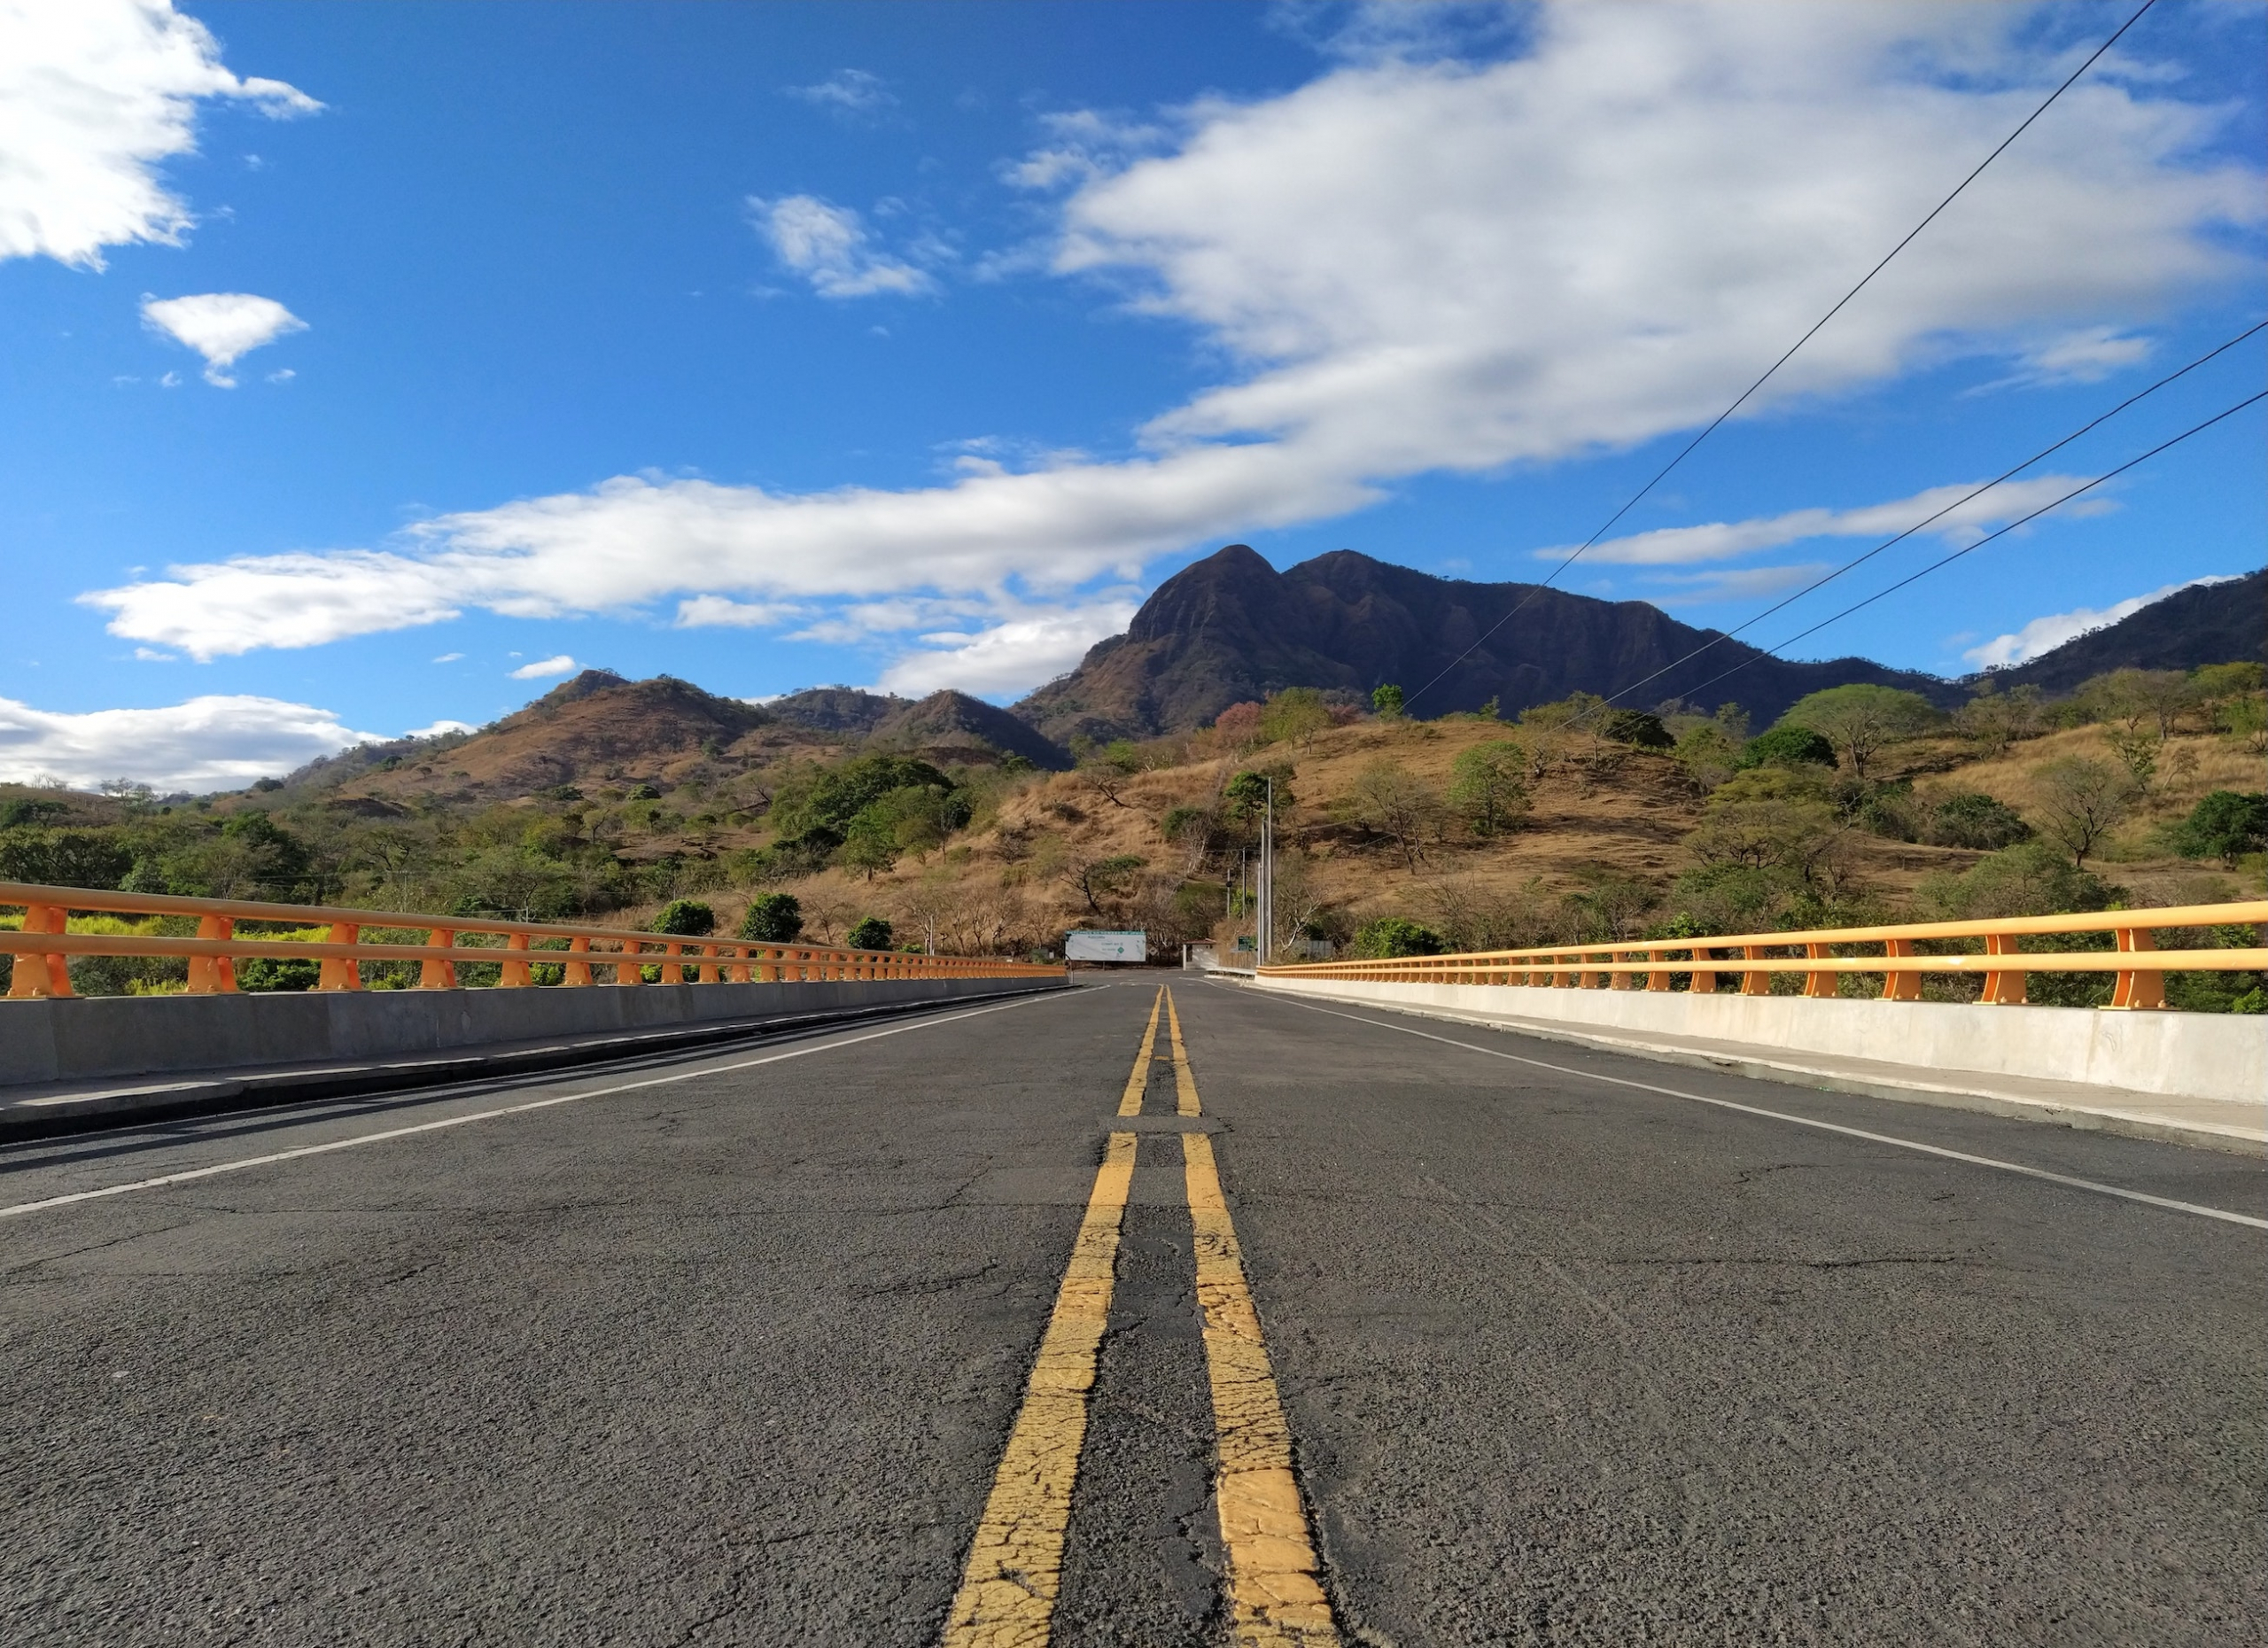 Rutas peligrosas: Tramos carreteros en México para poner atención y reforzar medidas de seguridad